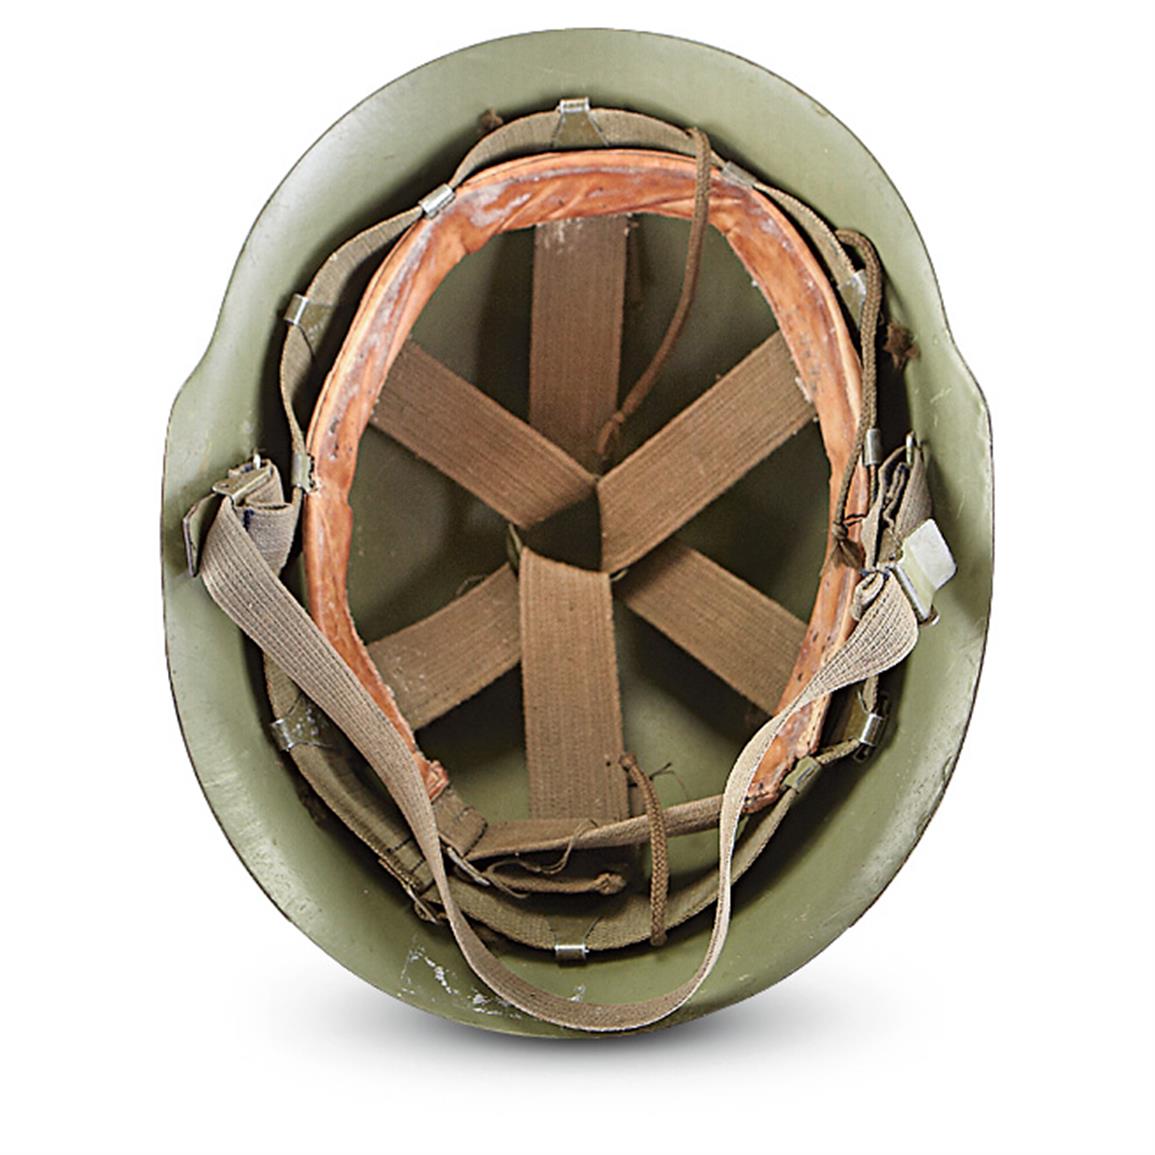 Serbian Military Surplus Steel Pot Helmet, Used - 590489, Helmets ...